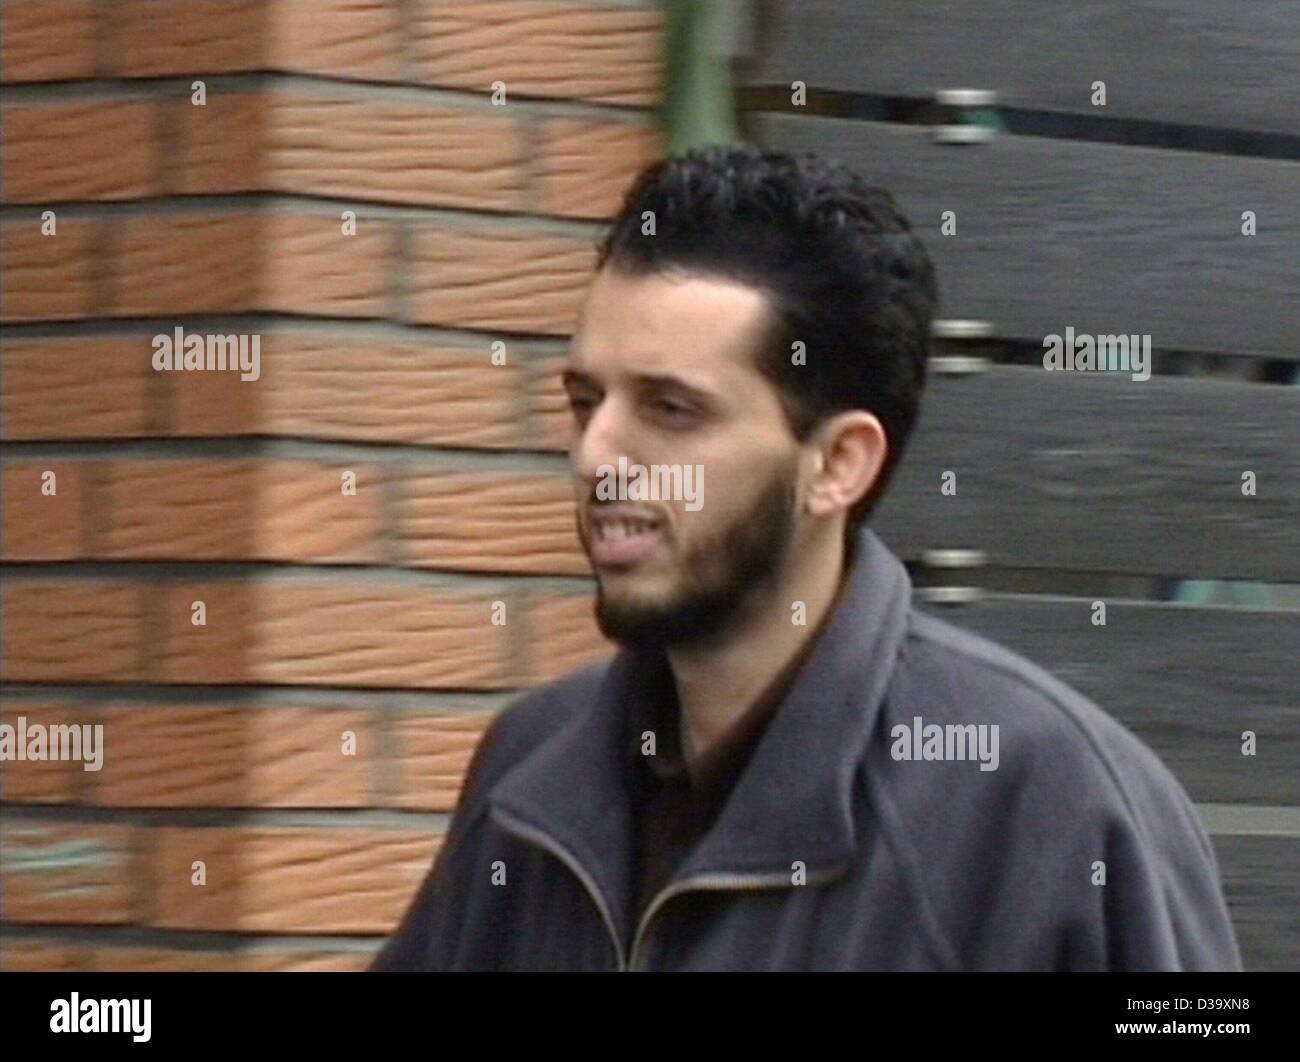 El estudiante marroquí Mounir El Motassadeq tras su detención en Hamburgo, 1.10.2001. Varios de los terroristas islámicos que cometieron los atentados suicidas con aviones secuestrado el 11 de septiembre de 2004 11 habían estado viviendo en Alemania como estudiantes antes de mudarse a Florida para tomar lecciones de vuelo. 27 años de edad, el Mot Foto de stock